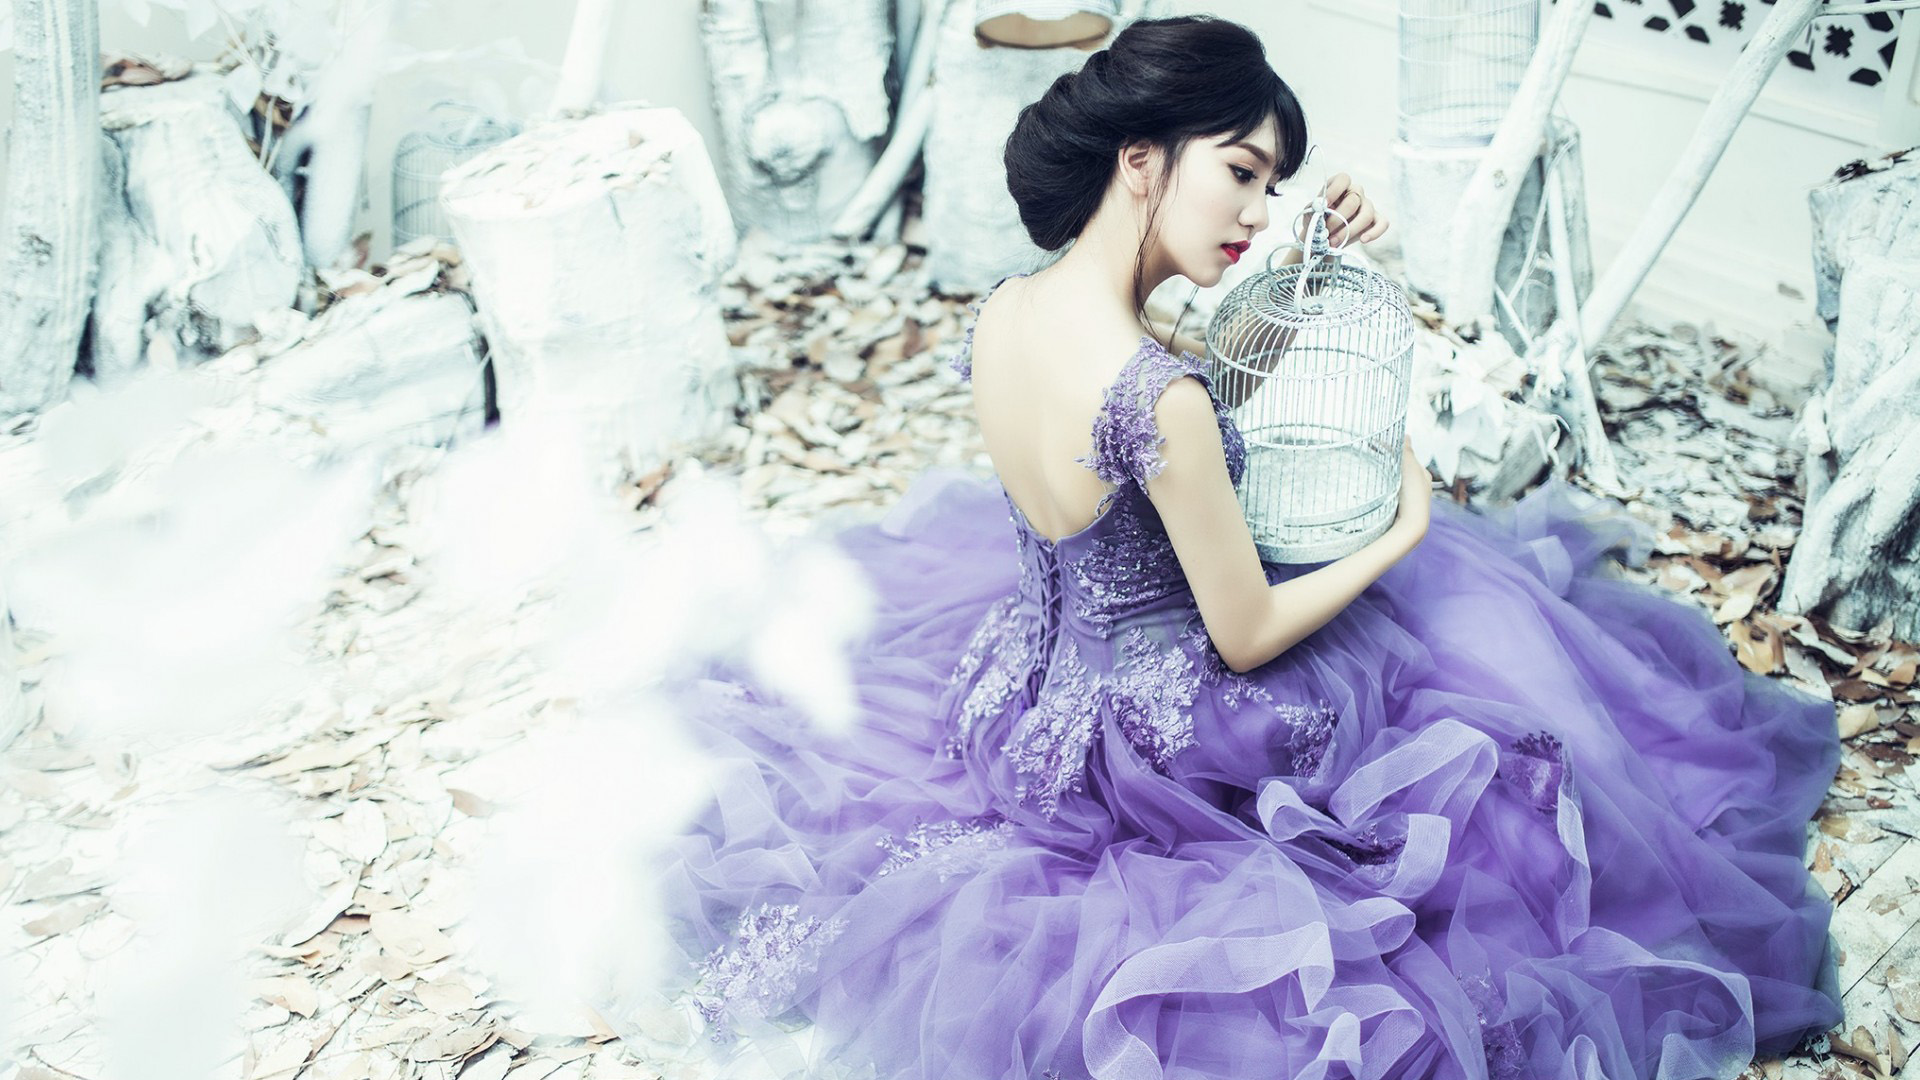 漂亮美女,美背,紫色裙子,笼子,唯美桌面壁纸